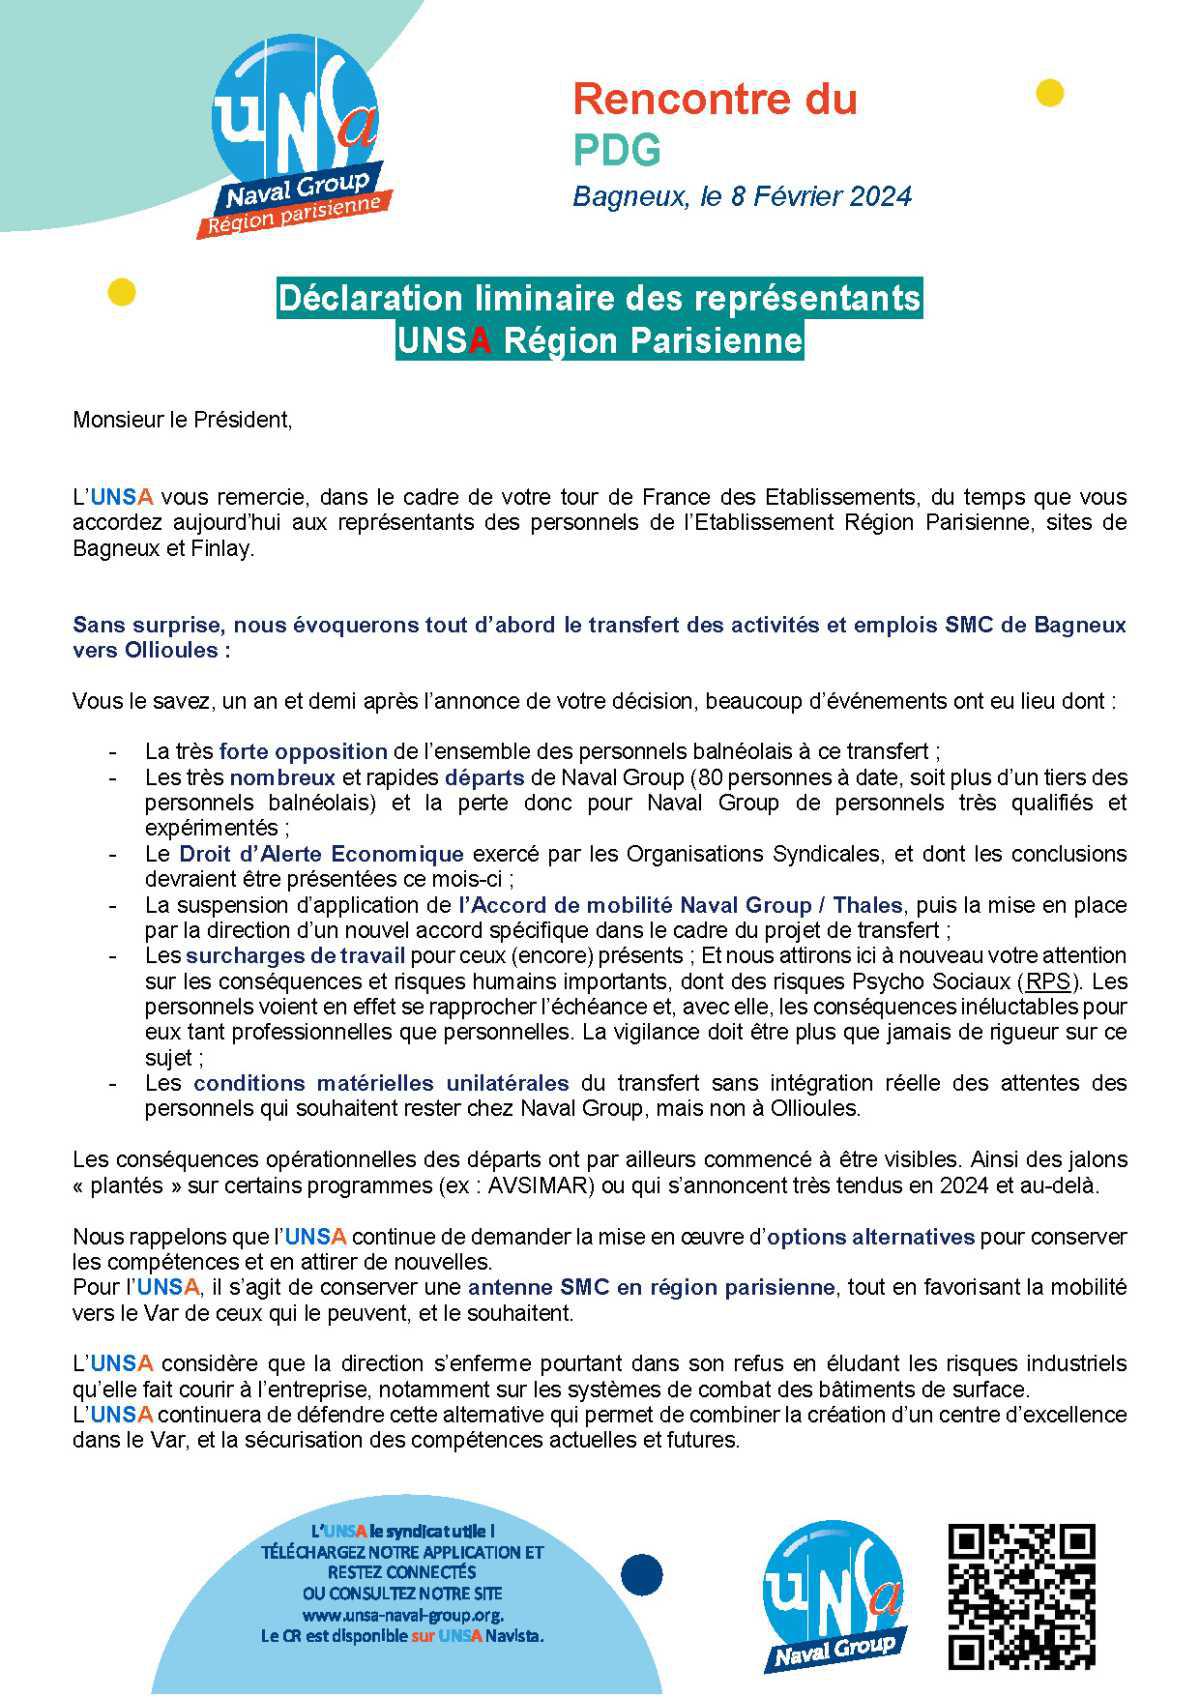 RENCONTRE AVEC LE PDG : Réunion du 8 février 2024